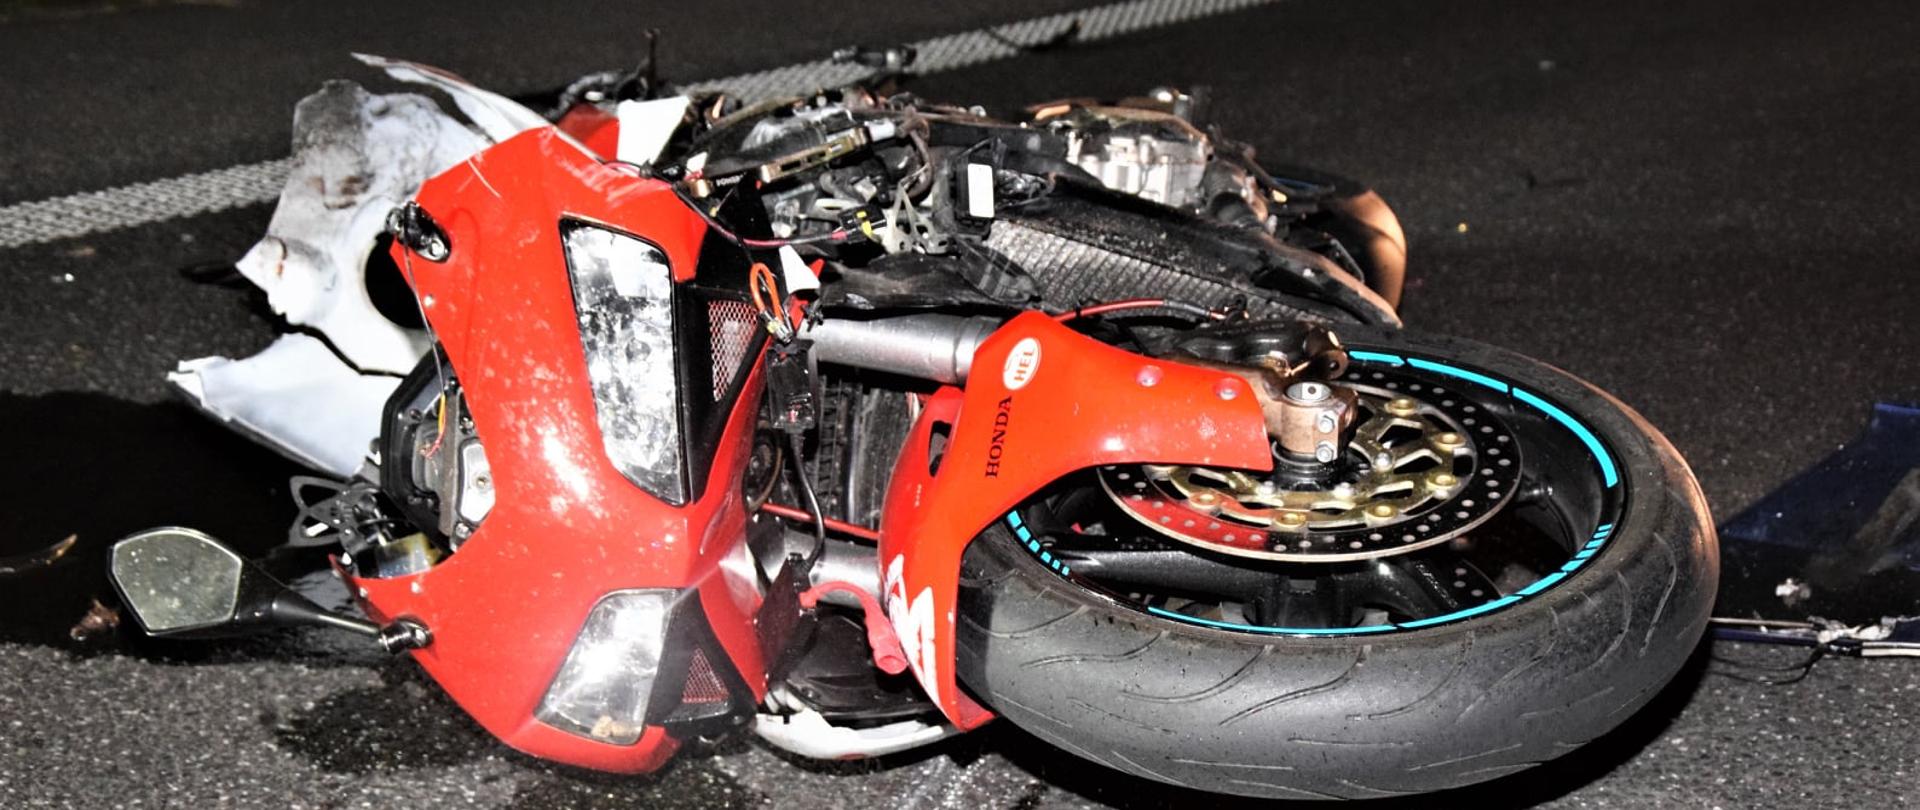 Widać leżący uszkodzony motocykl na drodze